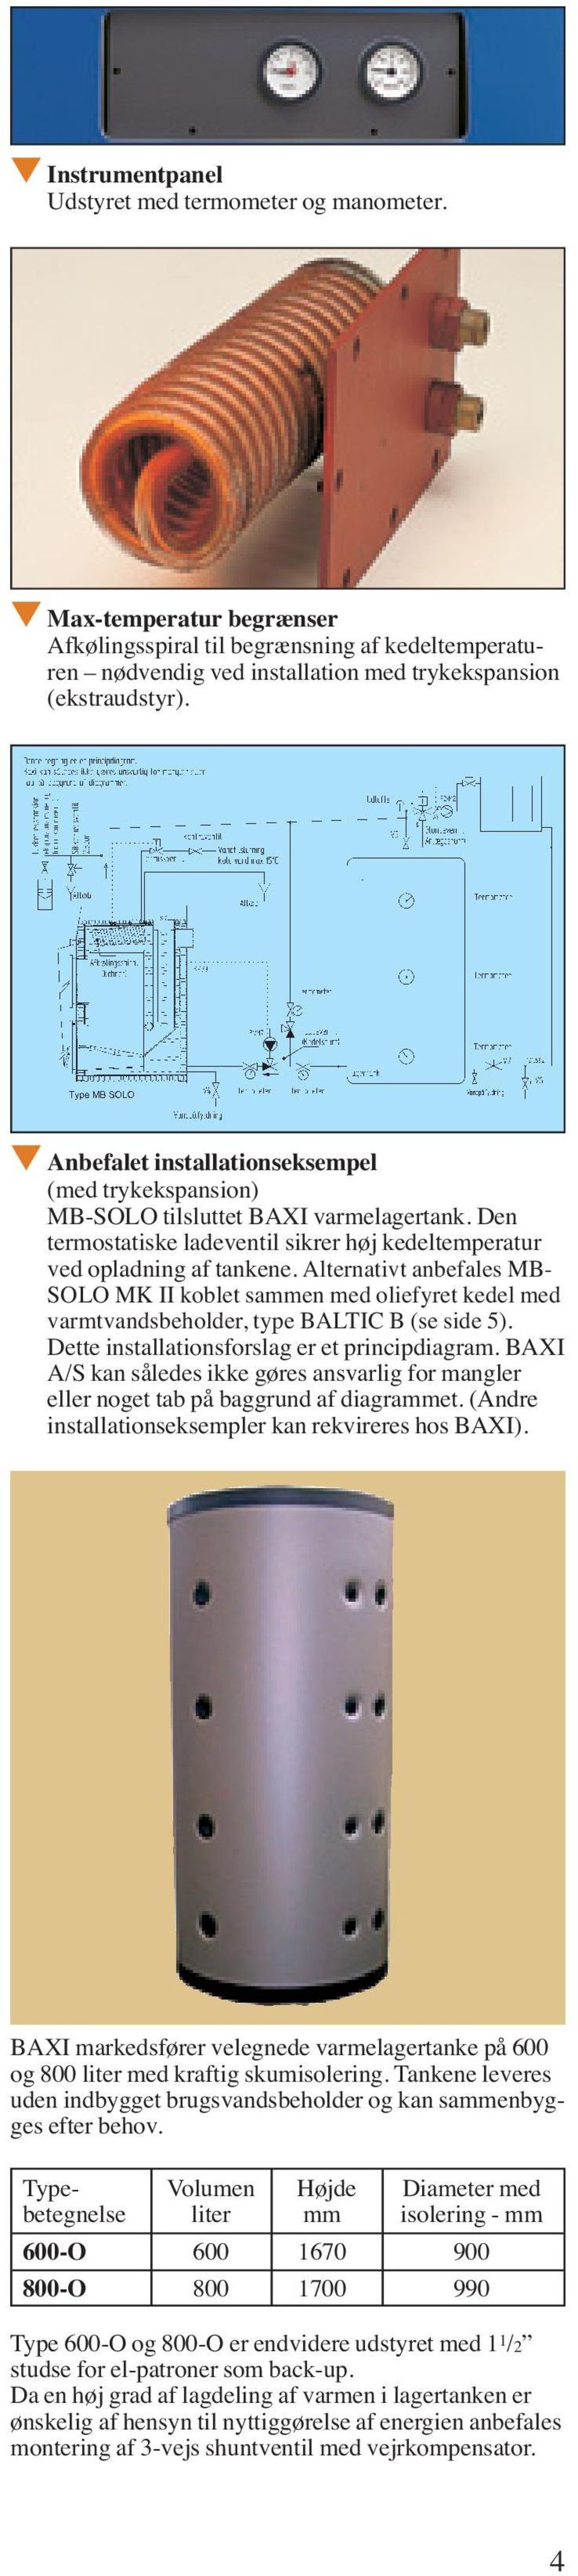 Alternativt anbefales MB- SOLO MK II koblet sammen med oliefyret kedel med varmtvandsbeholder, type BALTIC B (se side 5). Dette installationsforslag er et principdiagram.